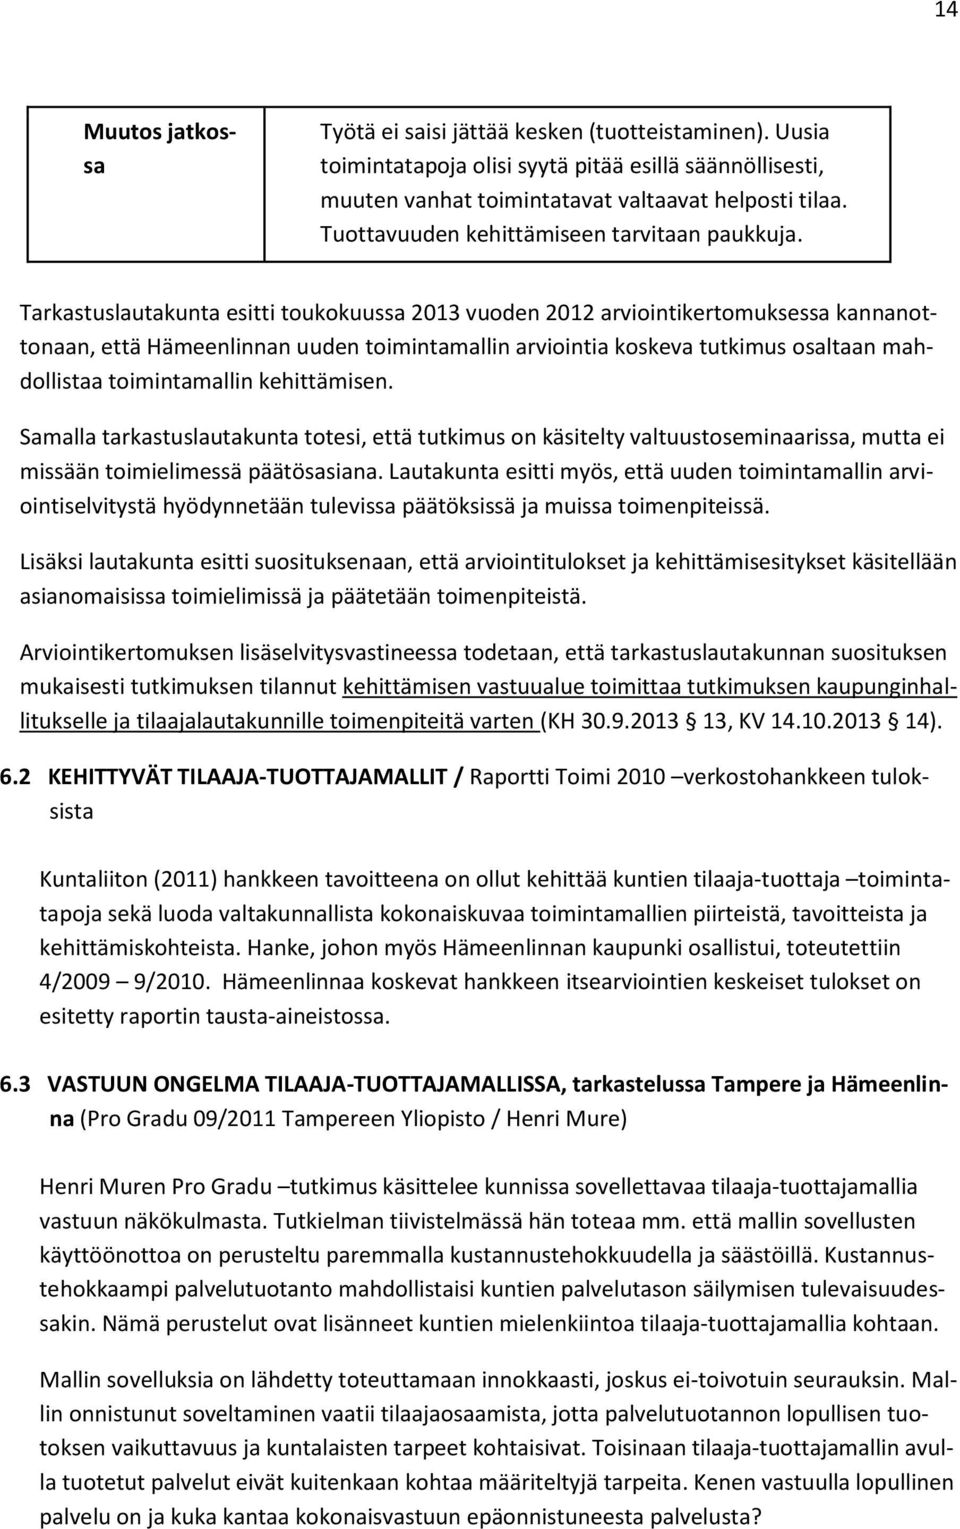 Tarkastuslautakunta esitti toukokuussa 2013 vuoden 2012 arviointikertomuksessa kannanottonaan, että Hämeenlinnan uuden toimintamallin arviointia koskeva tutkimus osaltaan mahdollistaa toimintamallin